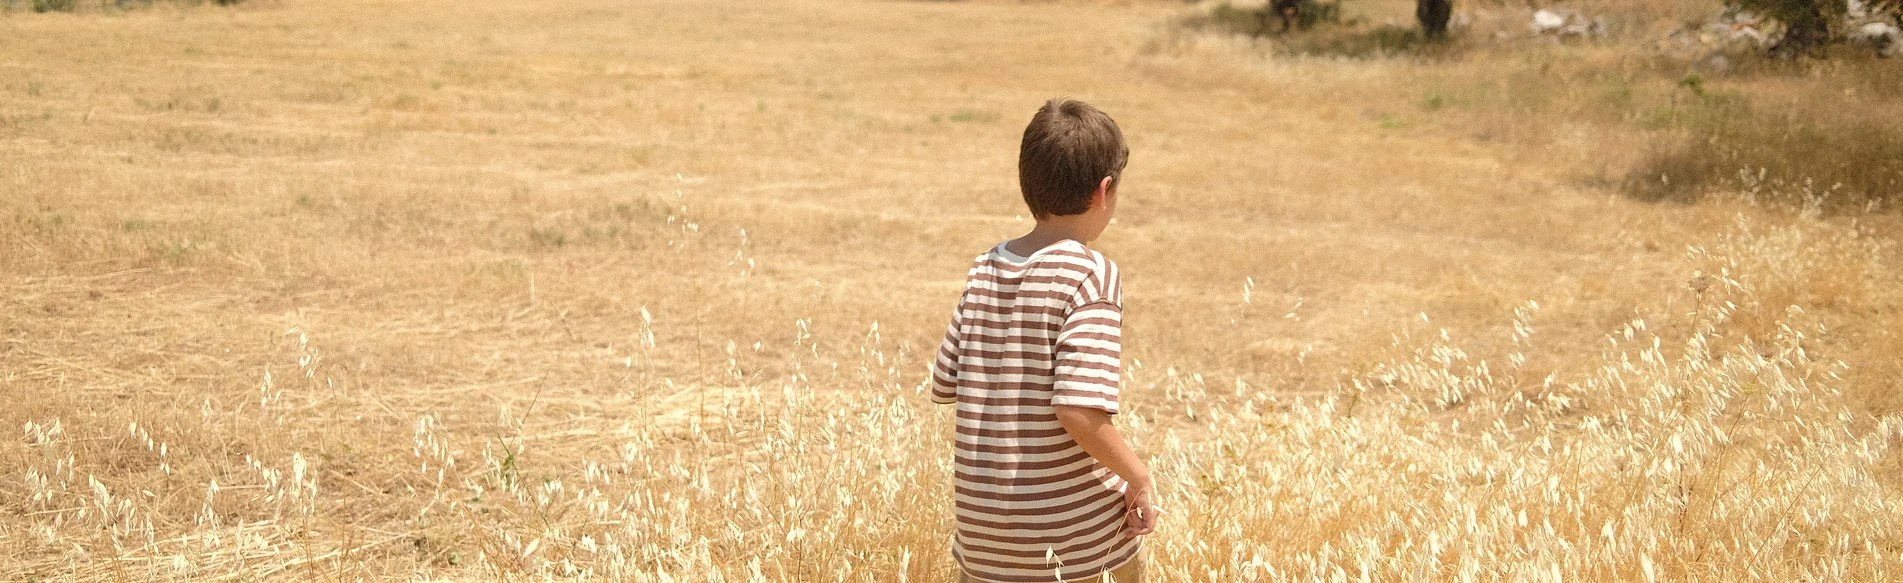 A child walking in grassland